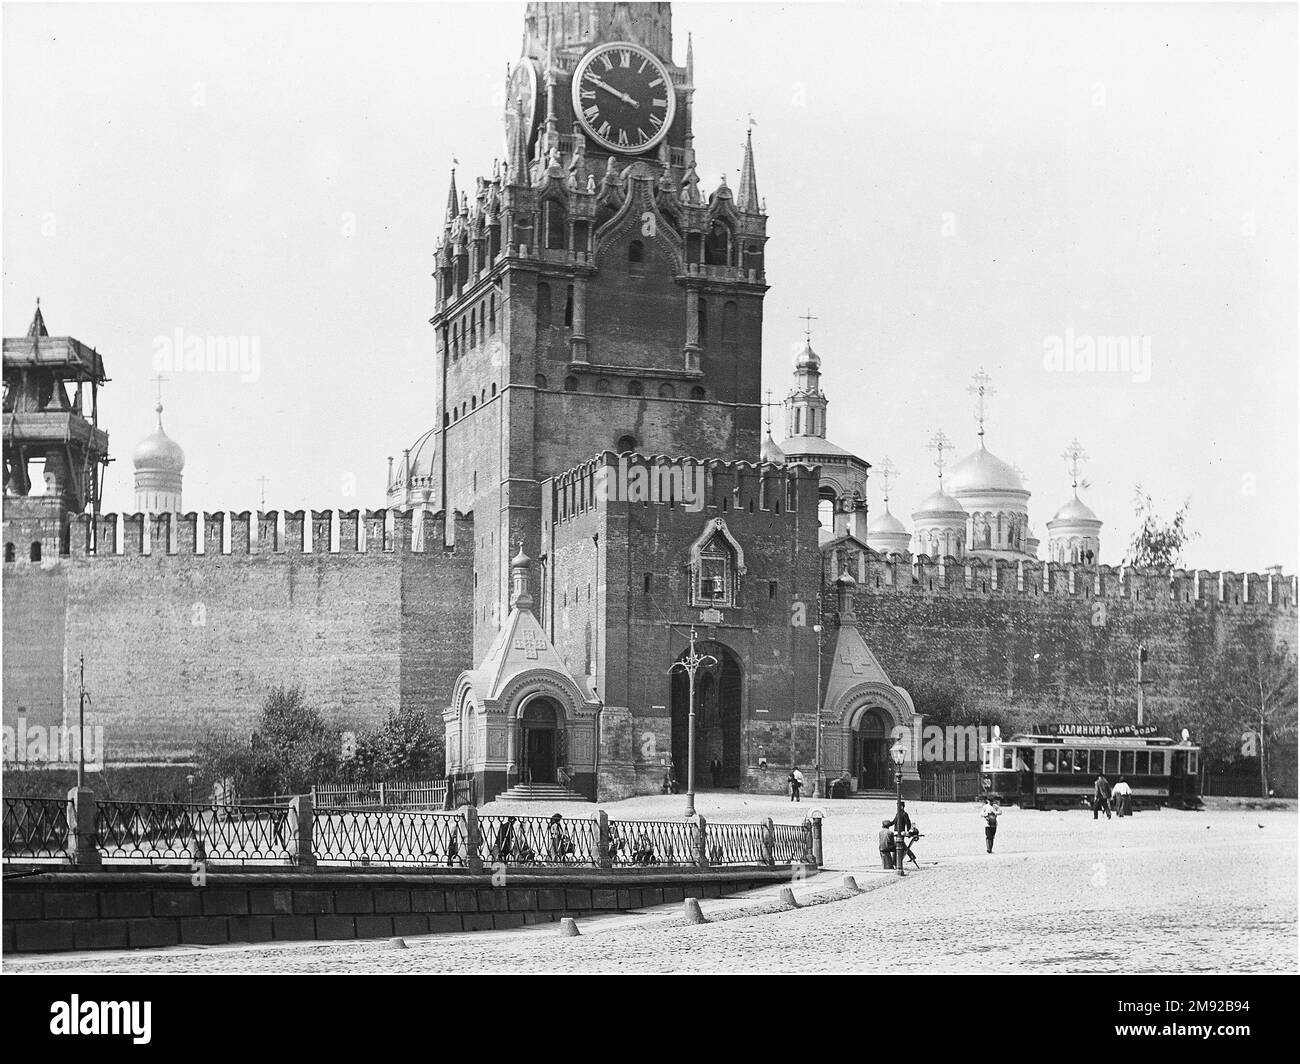 Roter Platz in Moskau. Spasskaya Tower; die Straßenbahn ist auf der rechten Seite zu sehen. Ca. Vor 1918 Uhr, aber nach 1898 Uhr Stockfoto